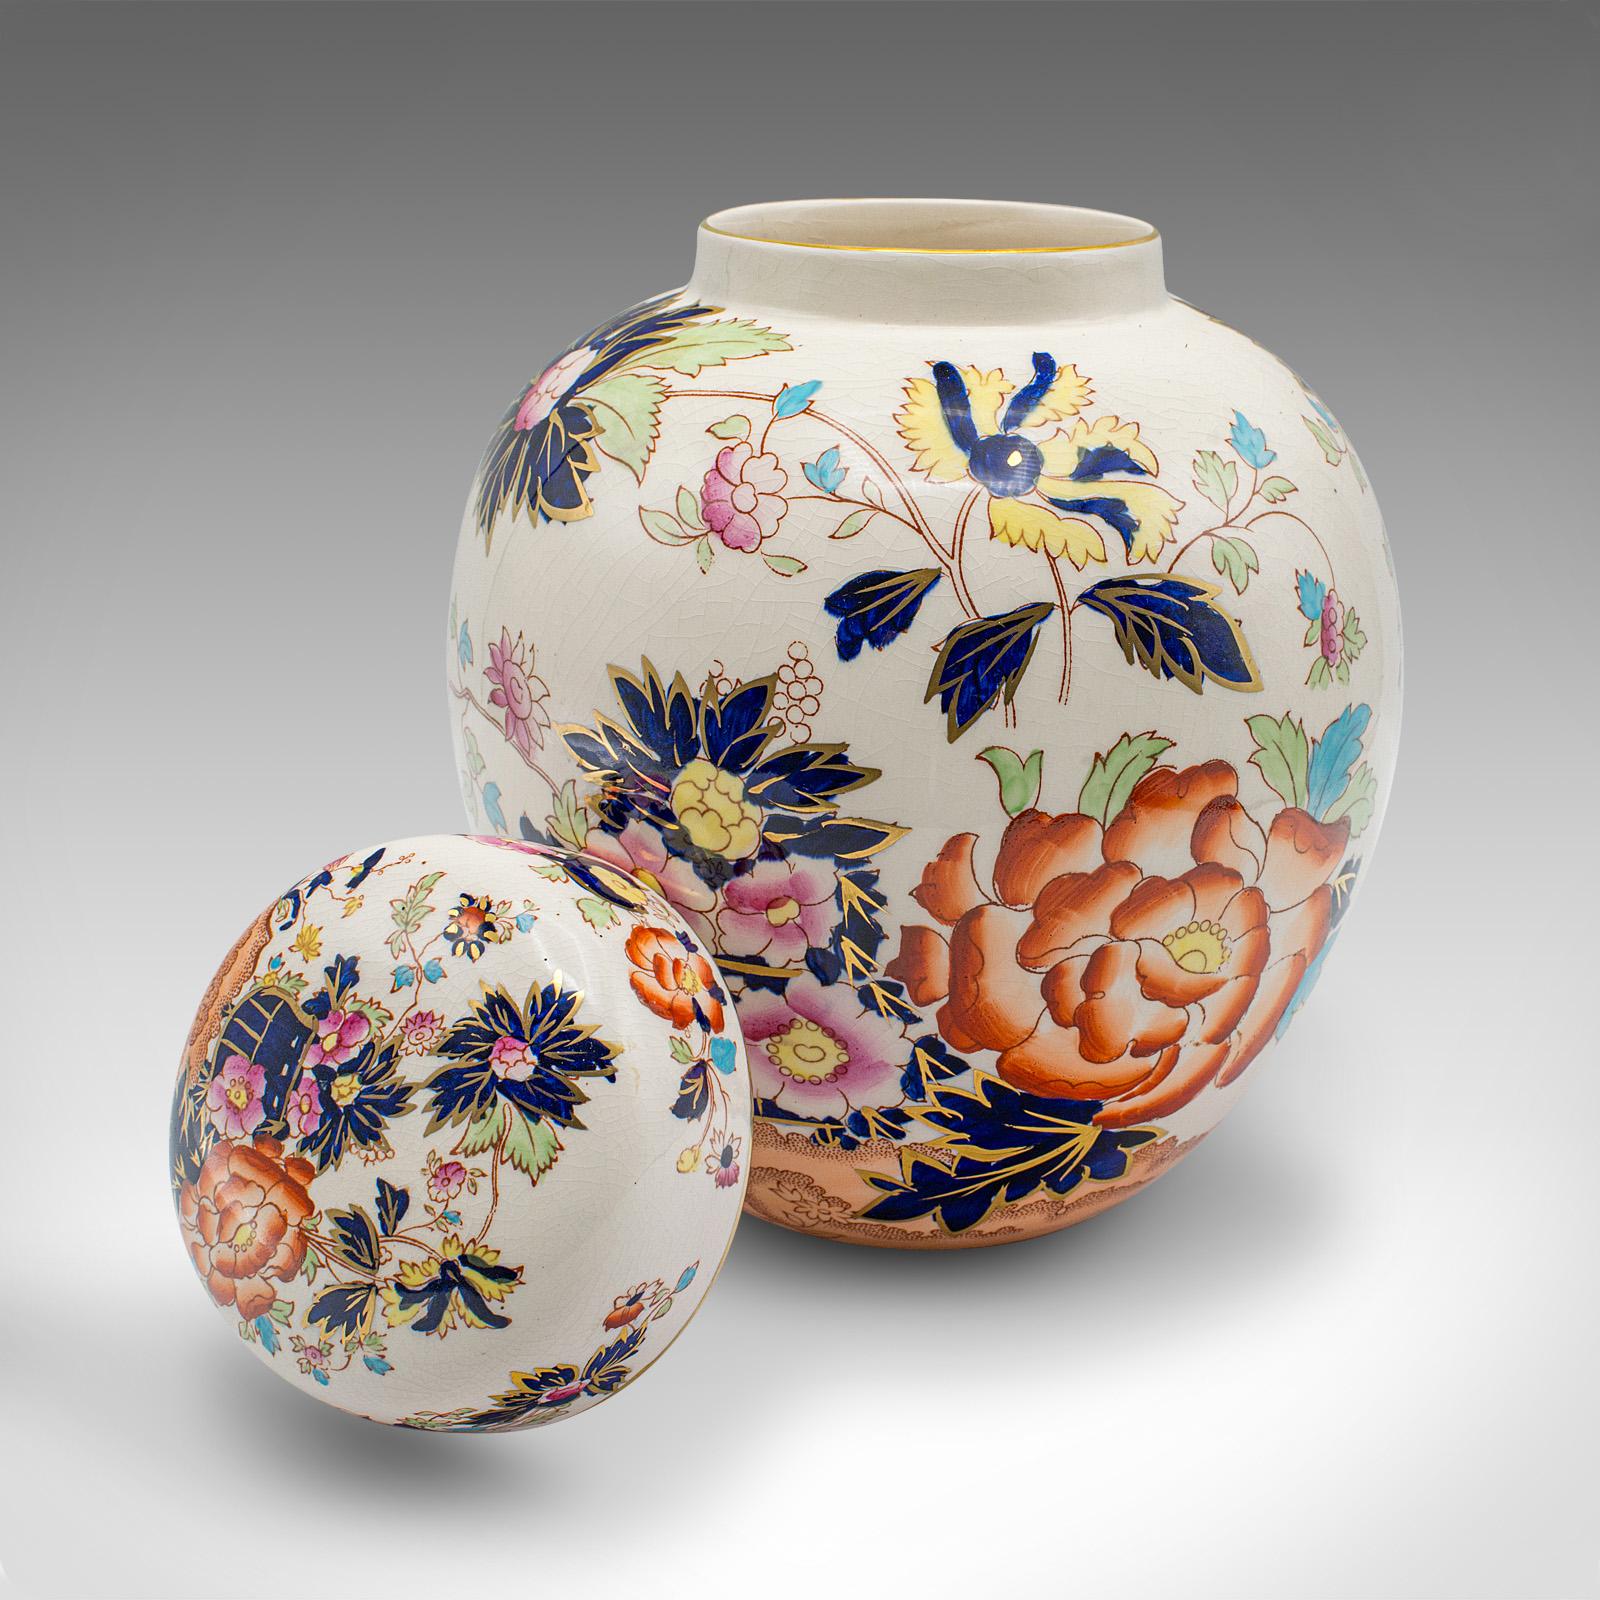 Il s'agit d'un pot de gingembre vintage. Urne à épices décorative en céramique anglaise, datant du début du 20e siècle, vers 1930.

Exemple attrayant du modèle Mandalay, avec de bonnes proportions
Présentant une patine d'usage désirable et en bon